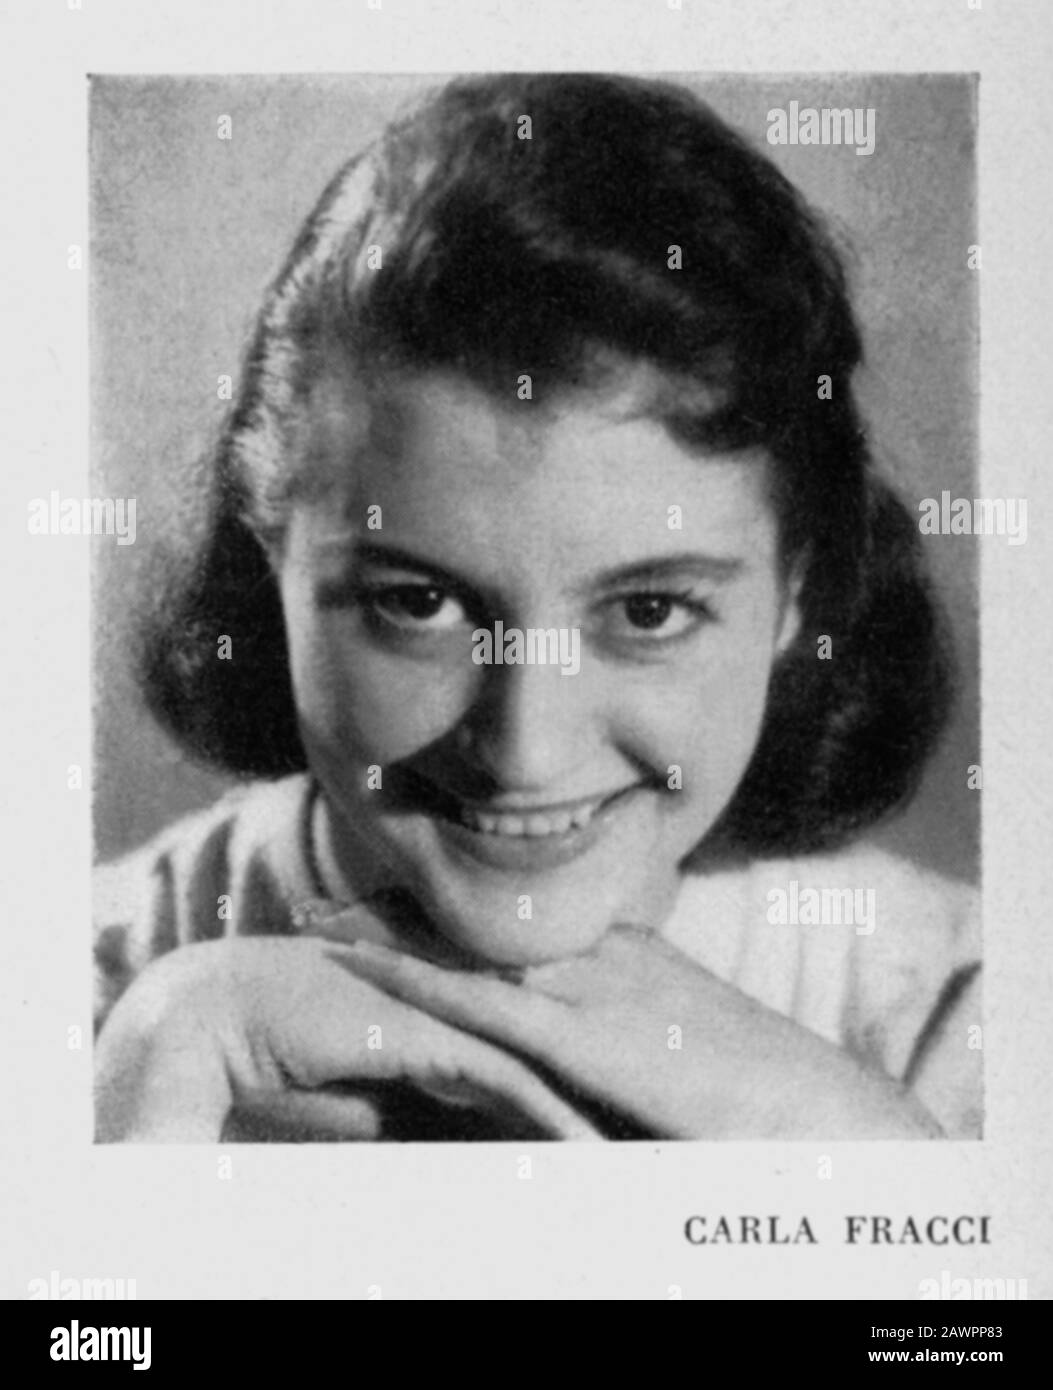 1957 , Milano , ITALIA : la ballerina CARLA FRACCI (Milano, 20 agosto 1936), giovane nel programma di balletto l'ENFENT ET LES SORTILEG Foto Stock